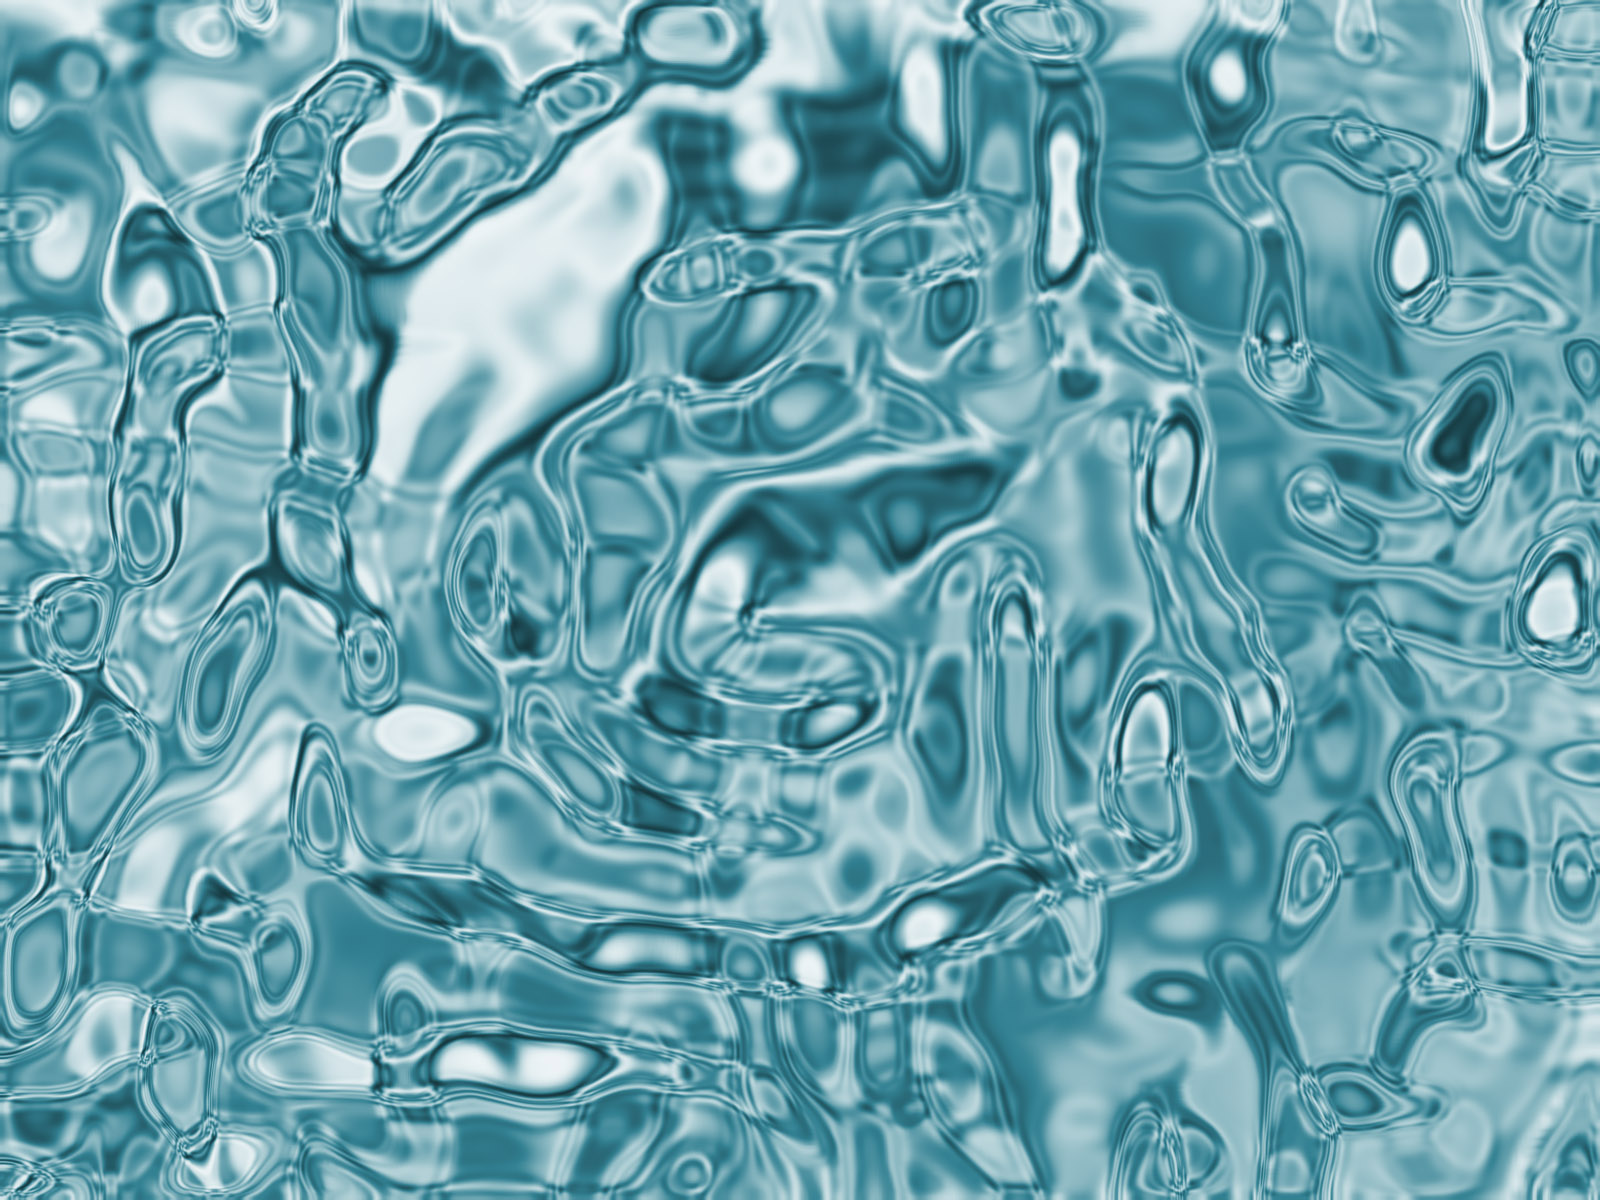 Микроорганизмы питьевой воды. Вода под микроскопом. Чистая вода под микроскопом. Капля чистой воды под микроскопом. Морская вода под микроскопом.